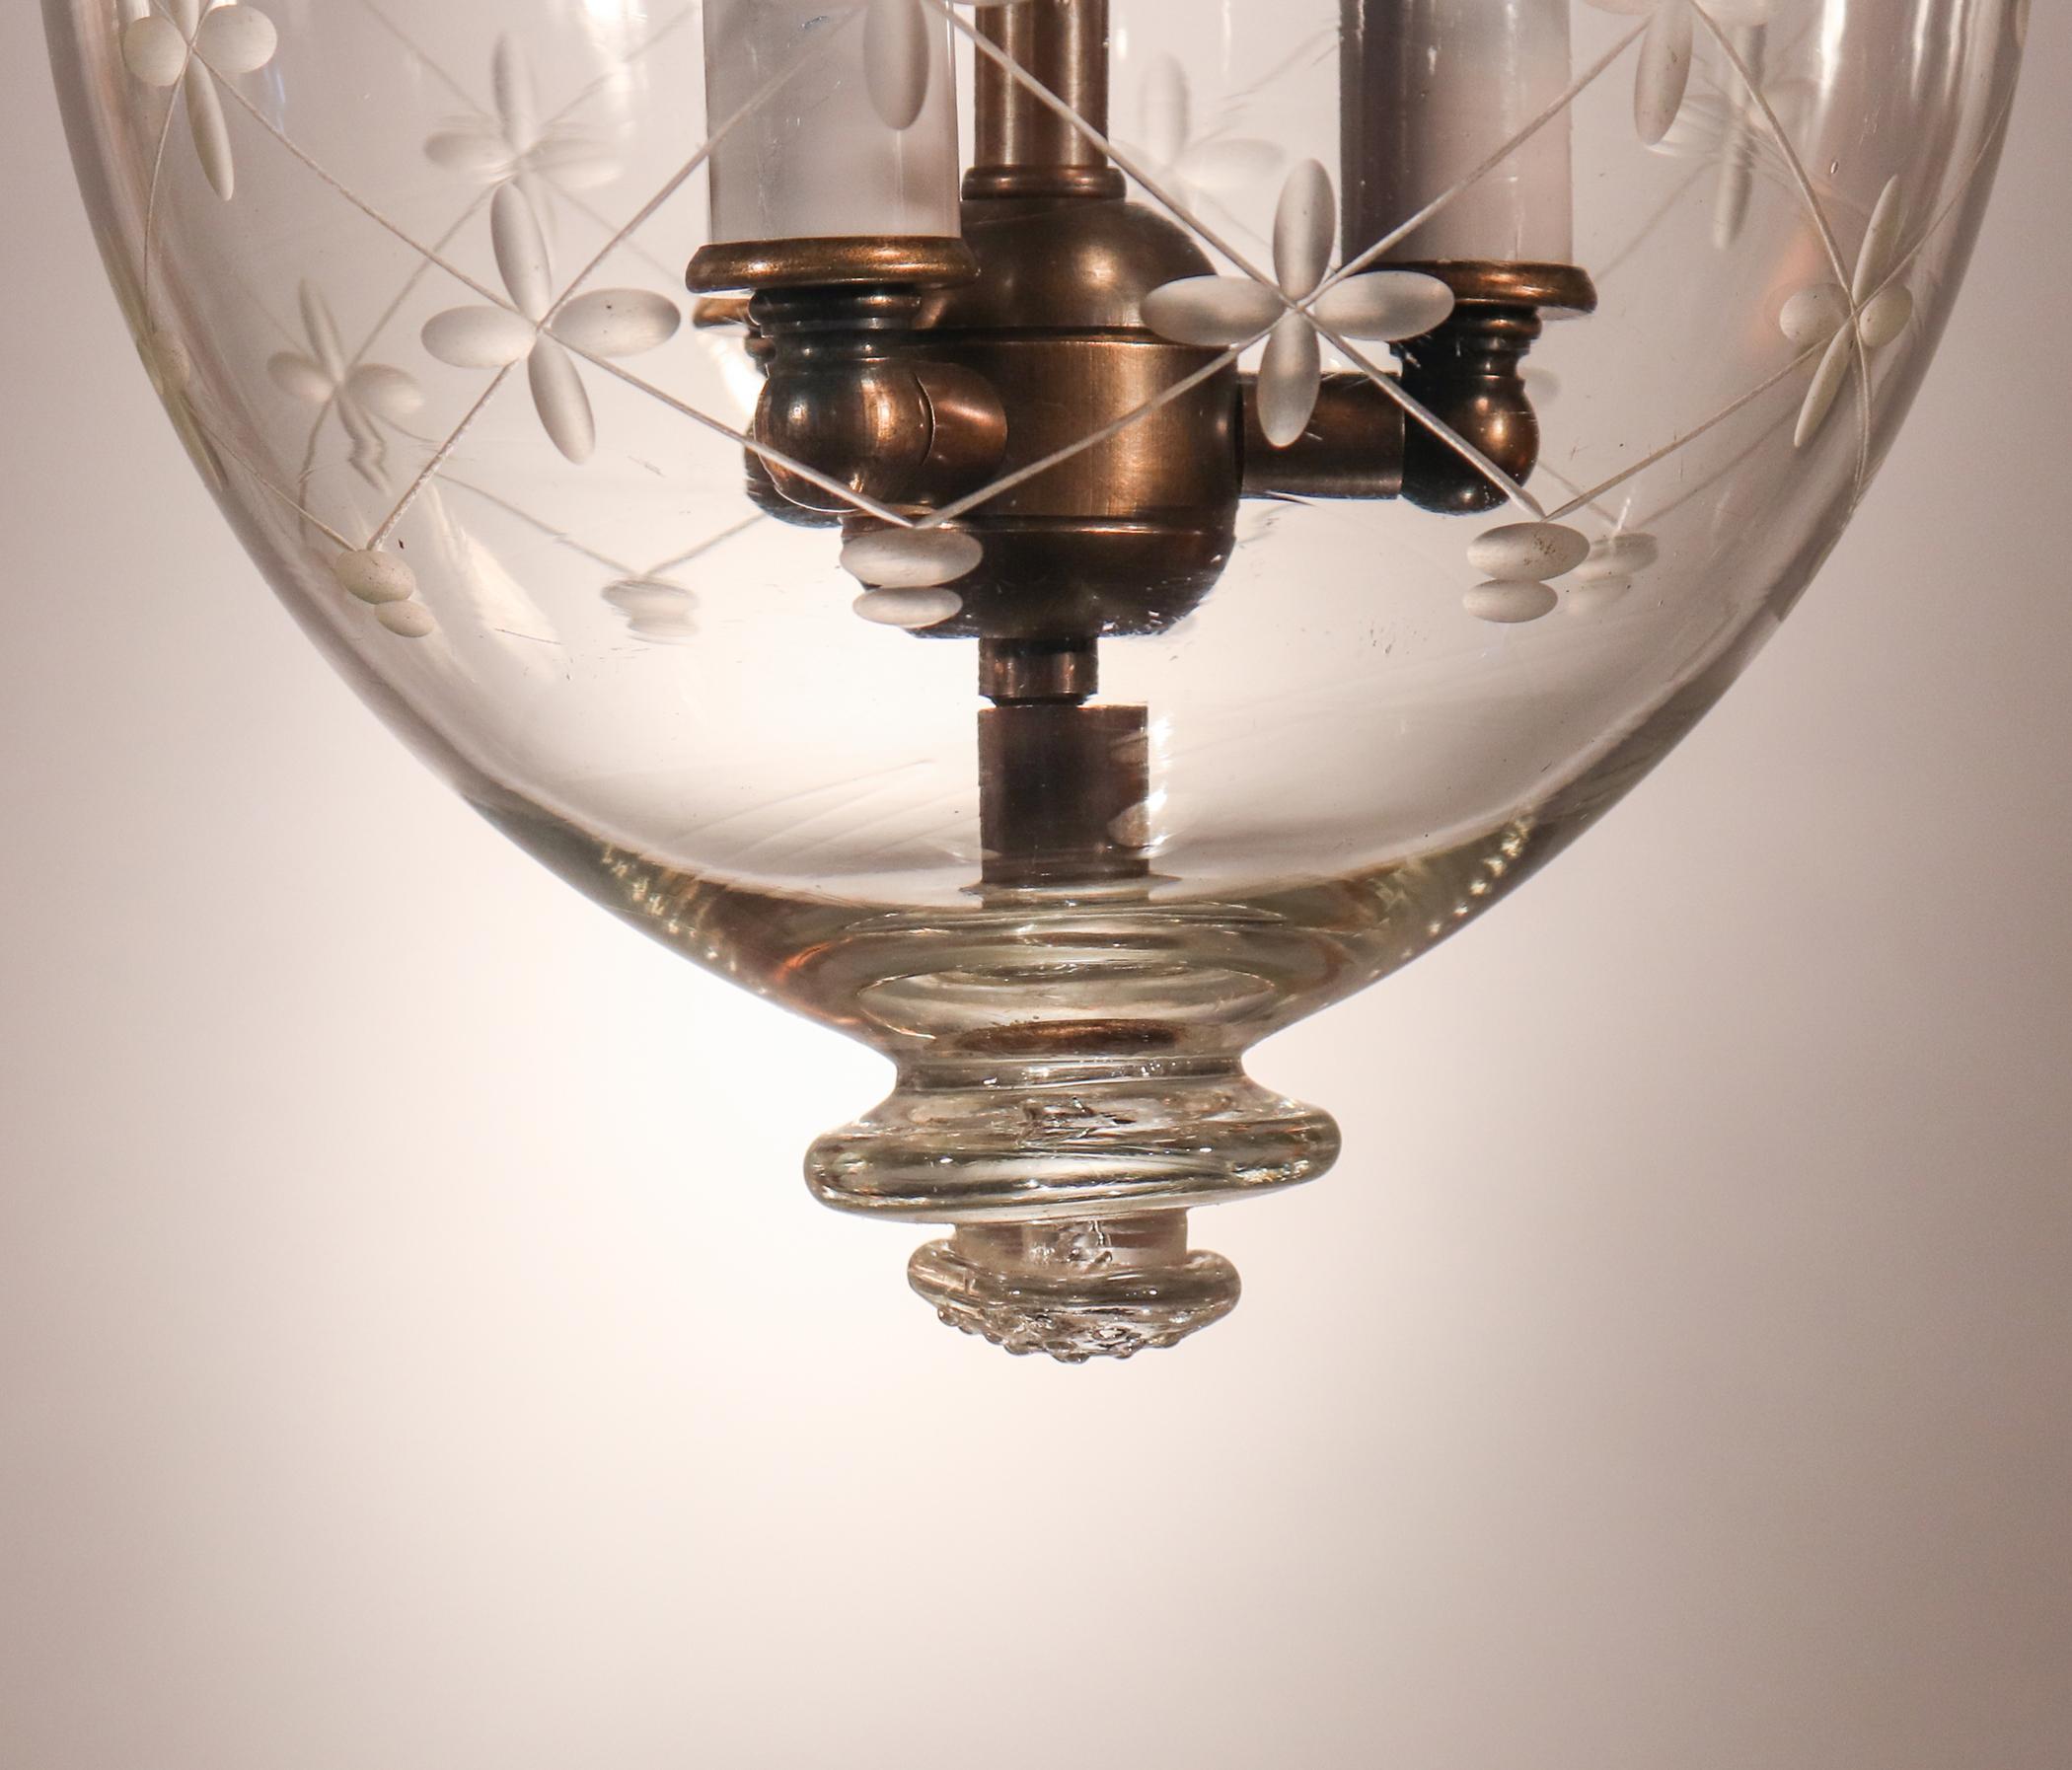 Petite Bell Jar Lantern with Trellis Etching 1